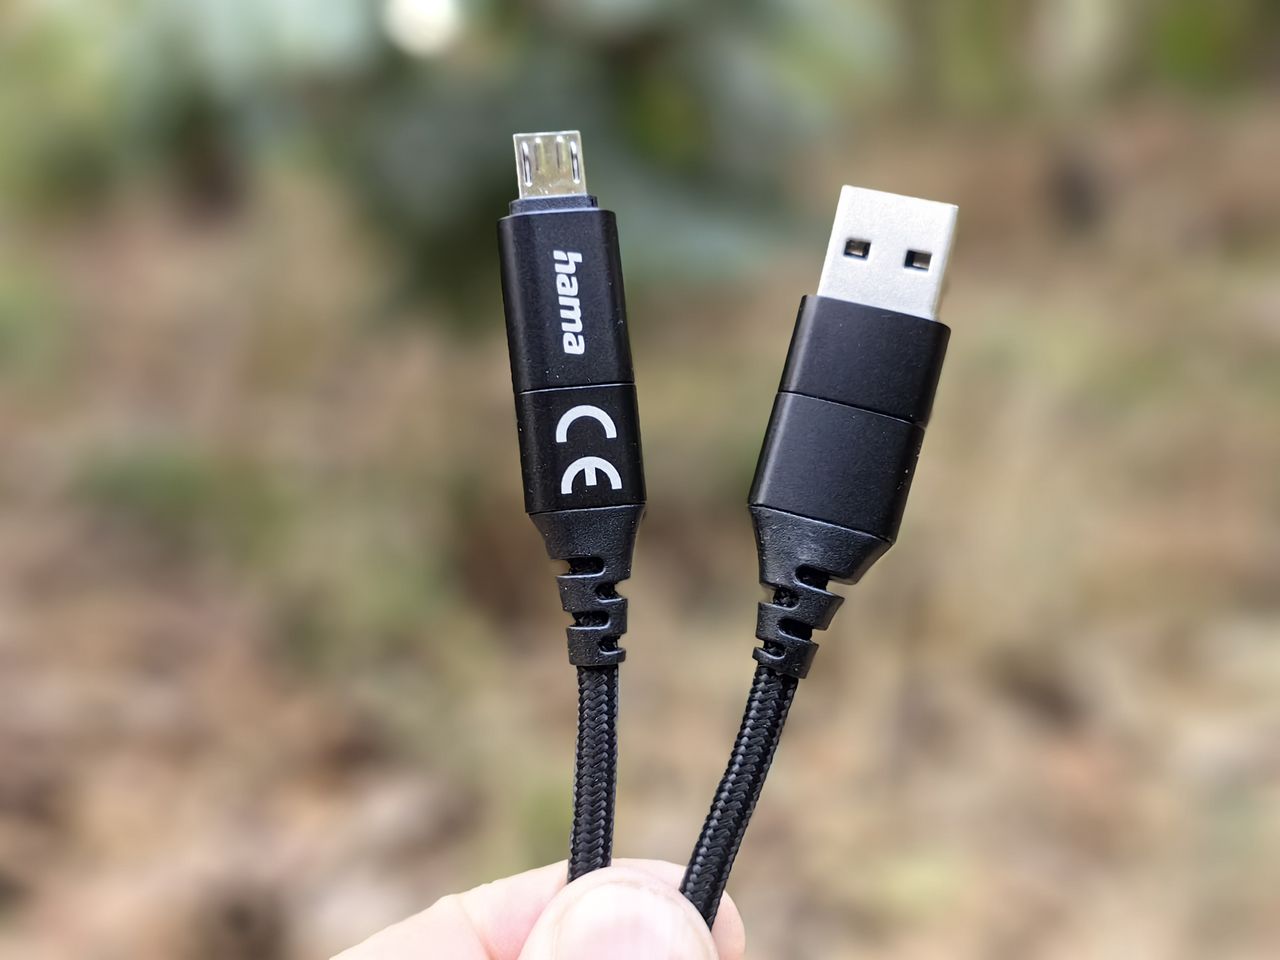 Złącza micro USB i USB A w kablu Hama 4in1 Charging/Data Cable to tak naprawdę przejściówki